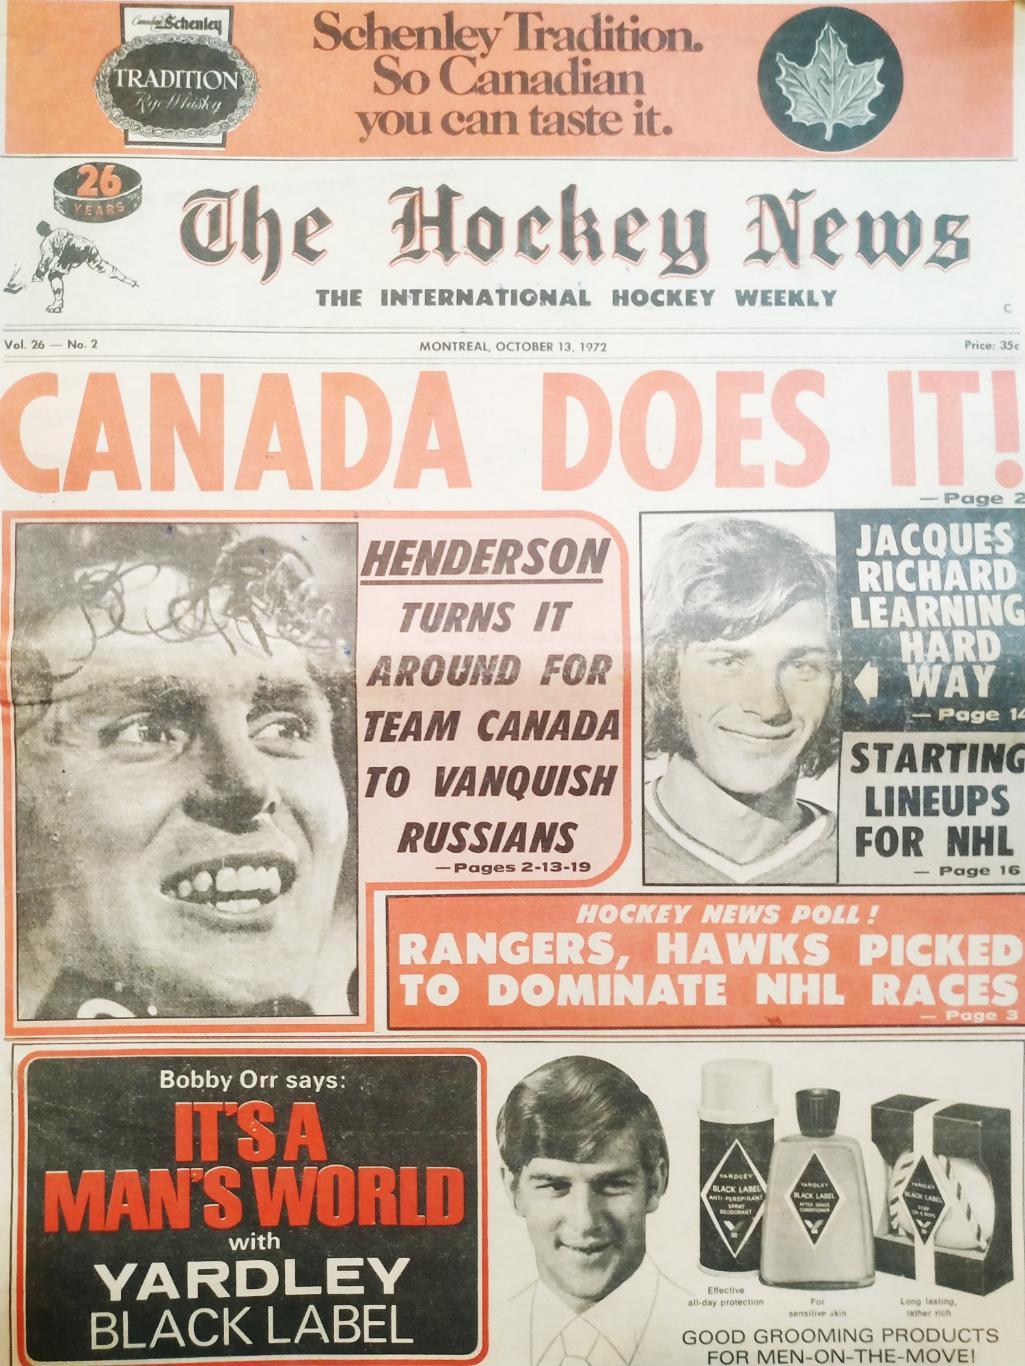 ХОККЕЙ ЖУРНАЛ ЕЖЕНЕДЕЛЬНИК НХЛ НОВОСТИ ХОККЕЯ OCT.13 1972 NHL THE HOCKEY NEWS